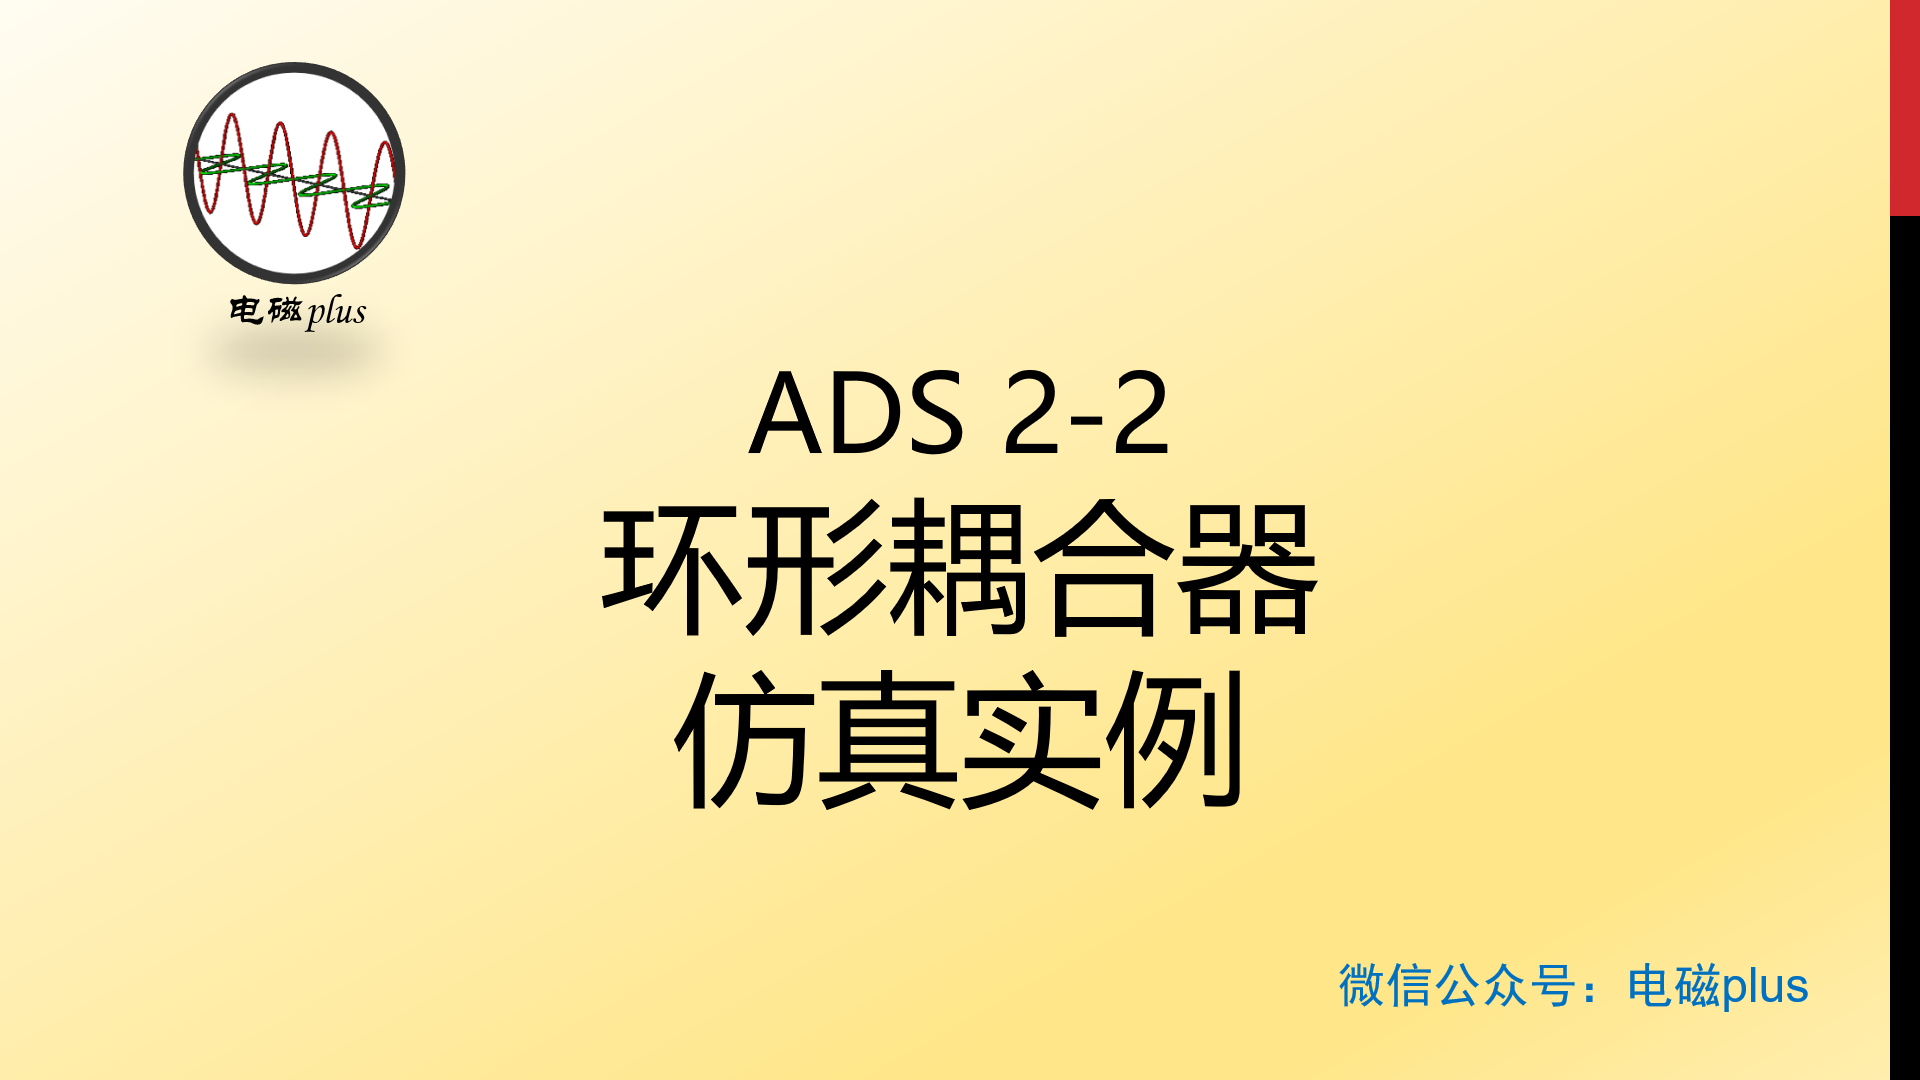 #ADS 仿真实例系列教程2-2：环形耦合器仿真实例教程，其中包括参数选取、原理图以及版图仿真